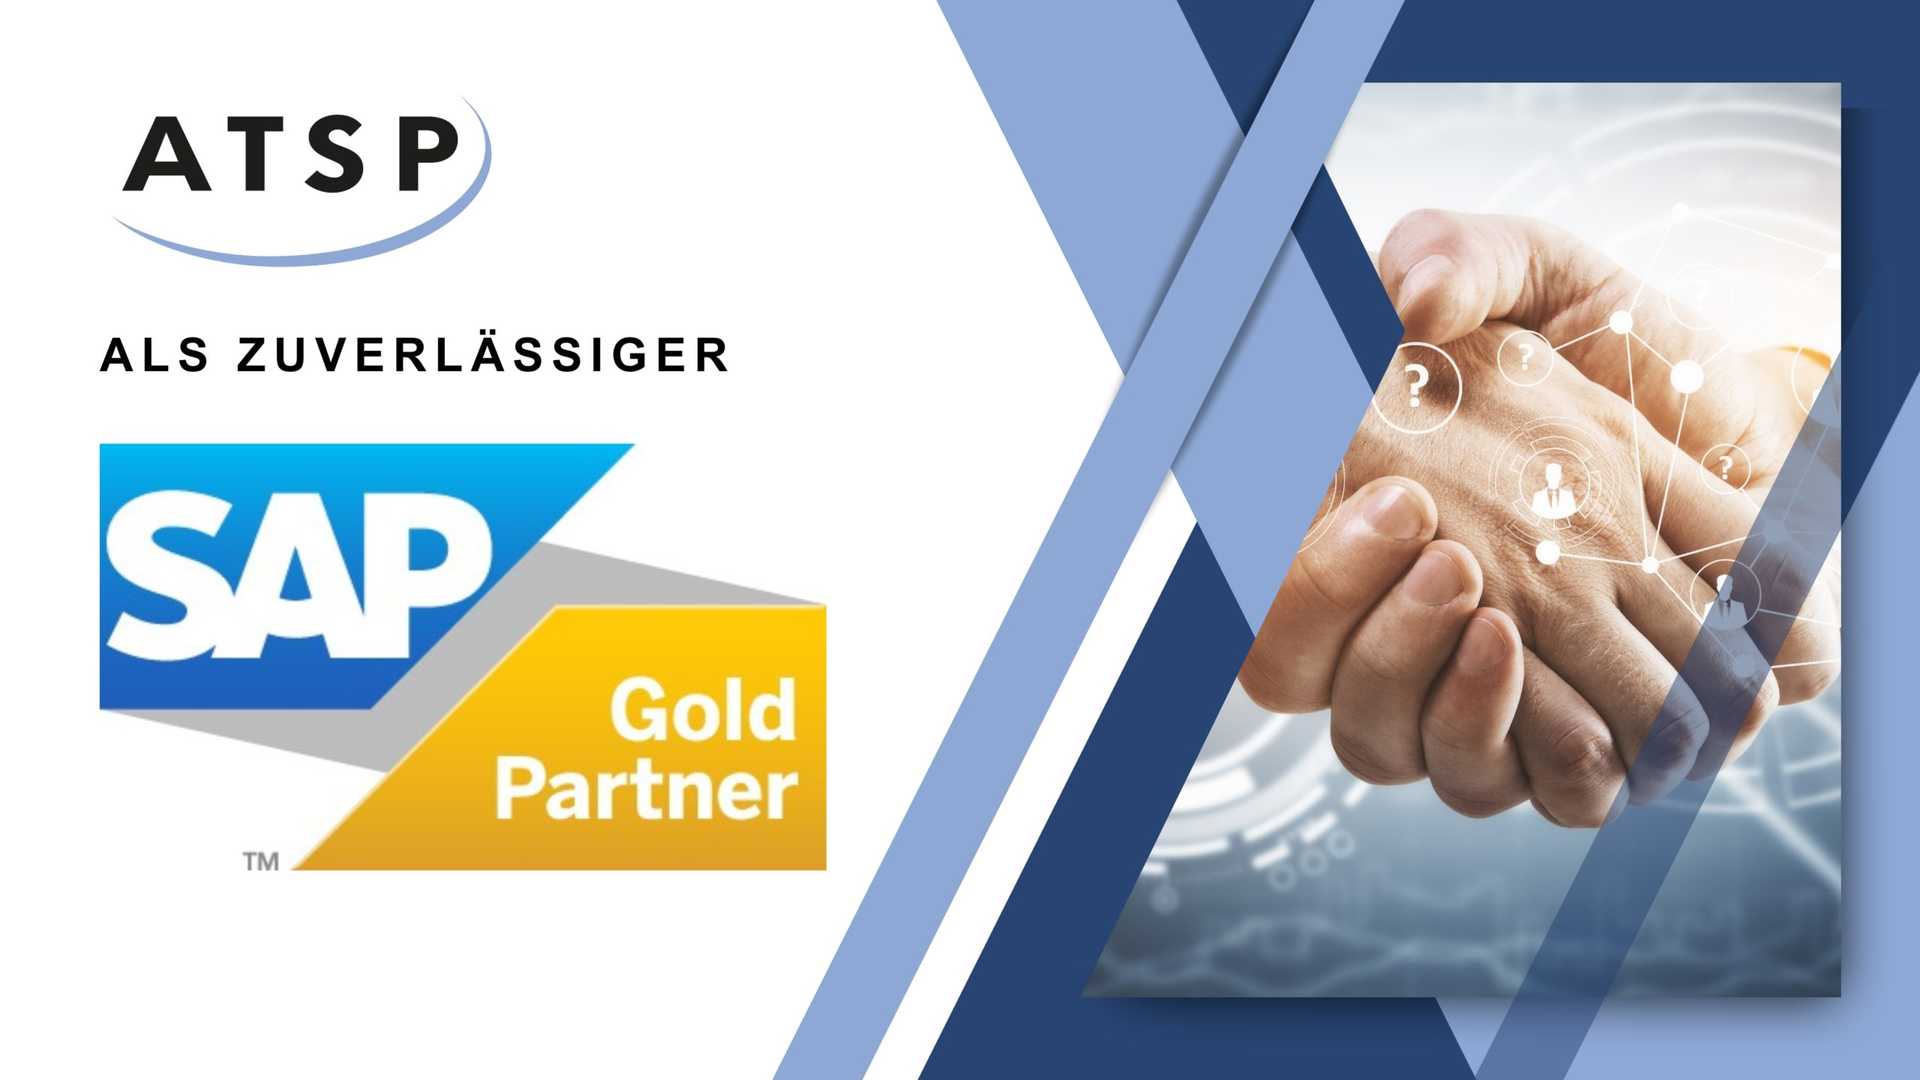 ATSP verlängert seinen SAP Goldpartnerstatus